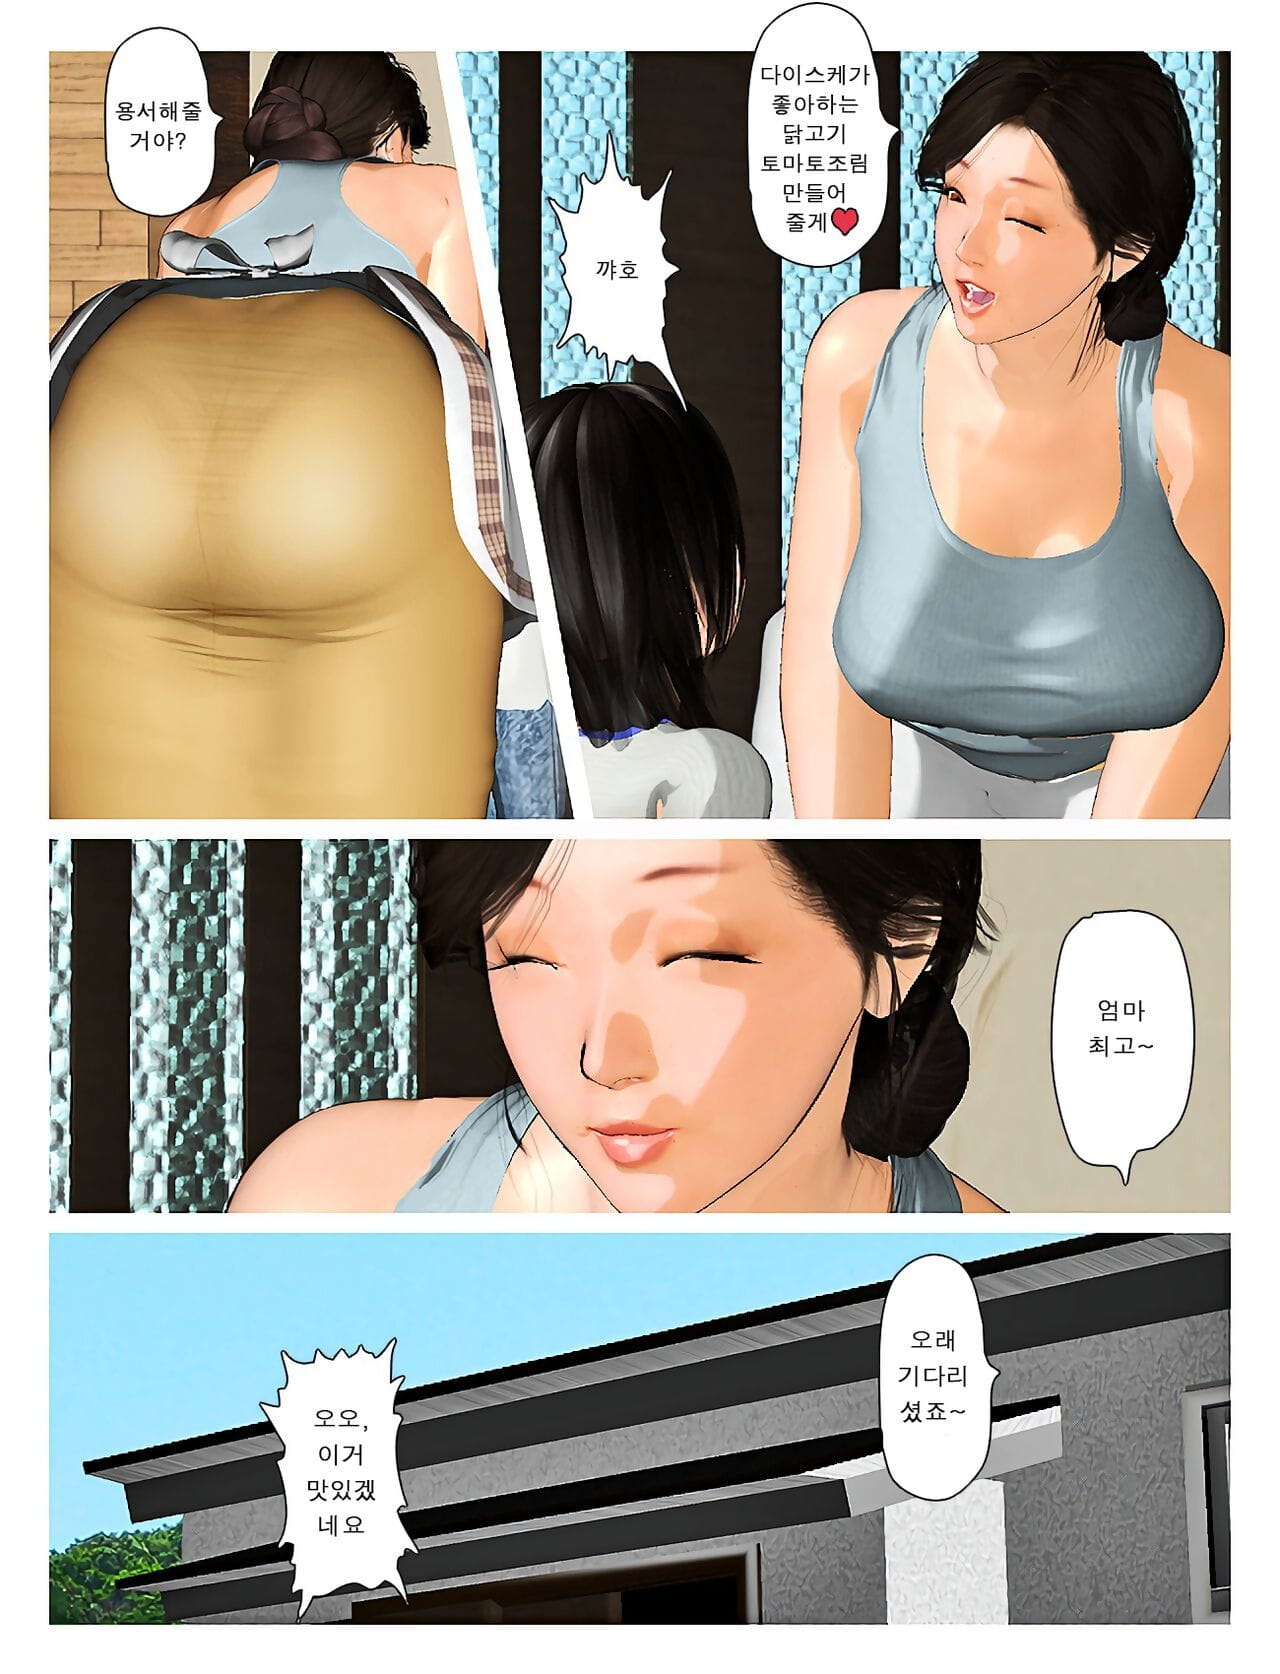 Kyou pas de misako san 2019:3 오늘의 미사코씨 2019:3 page 1